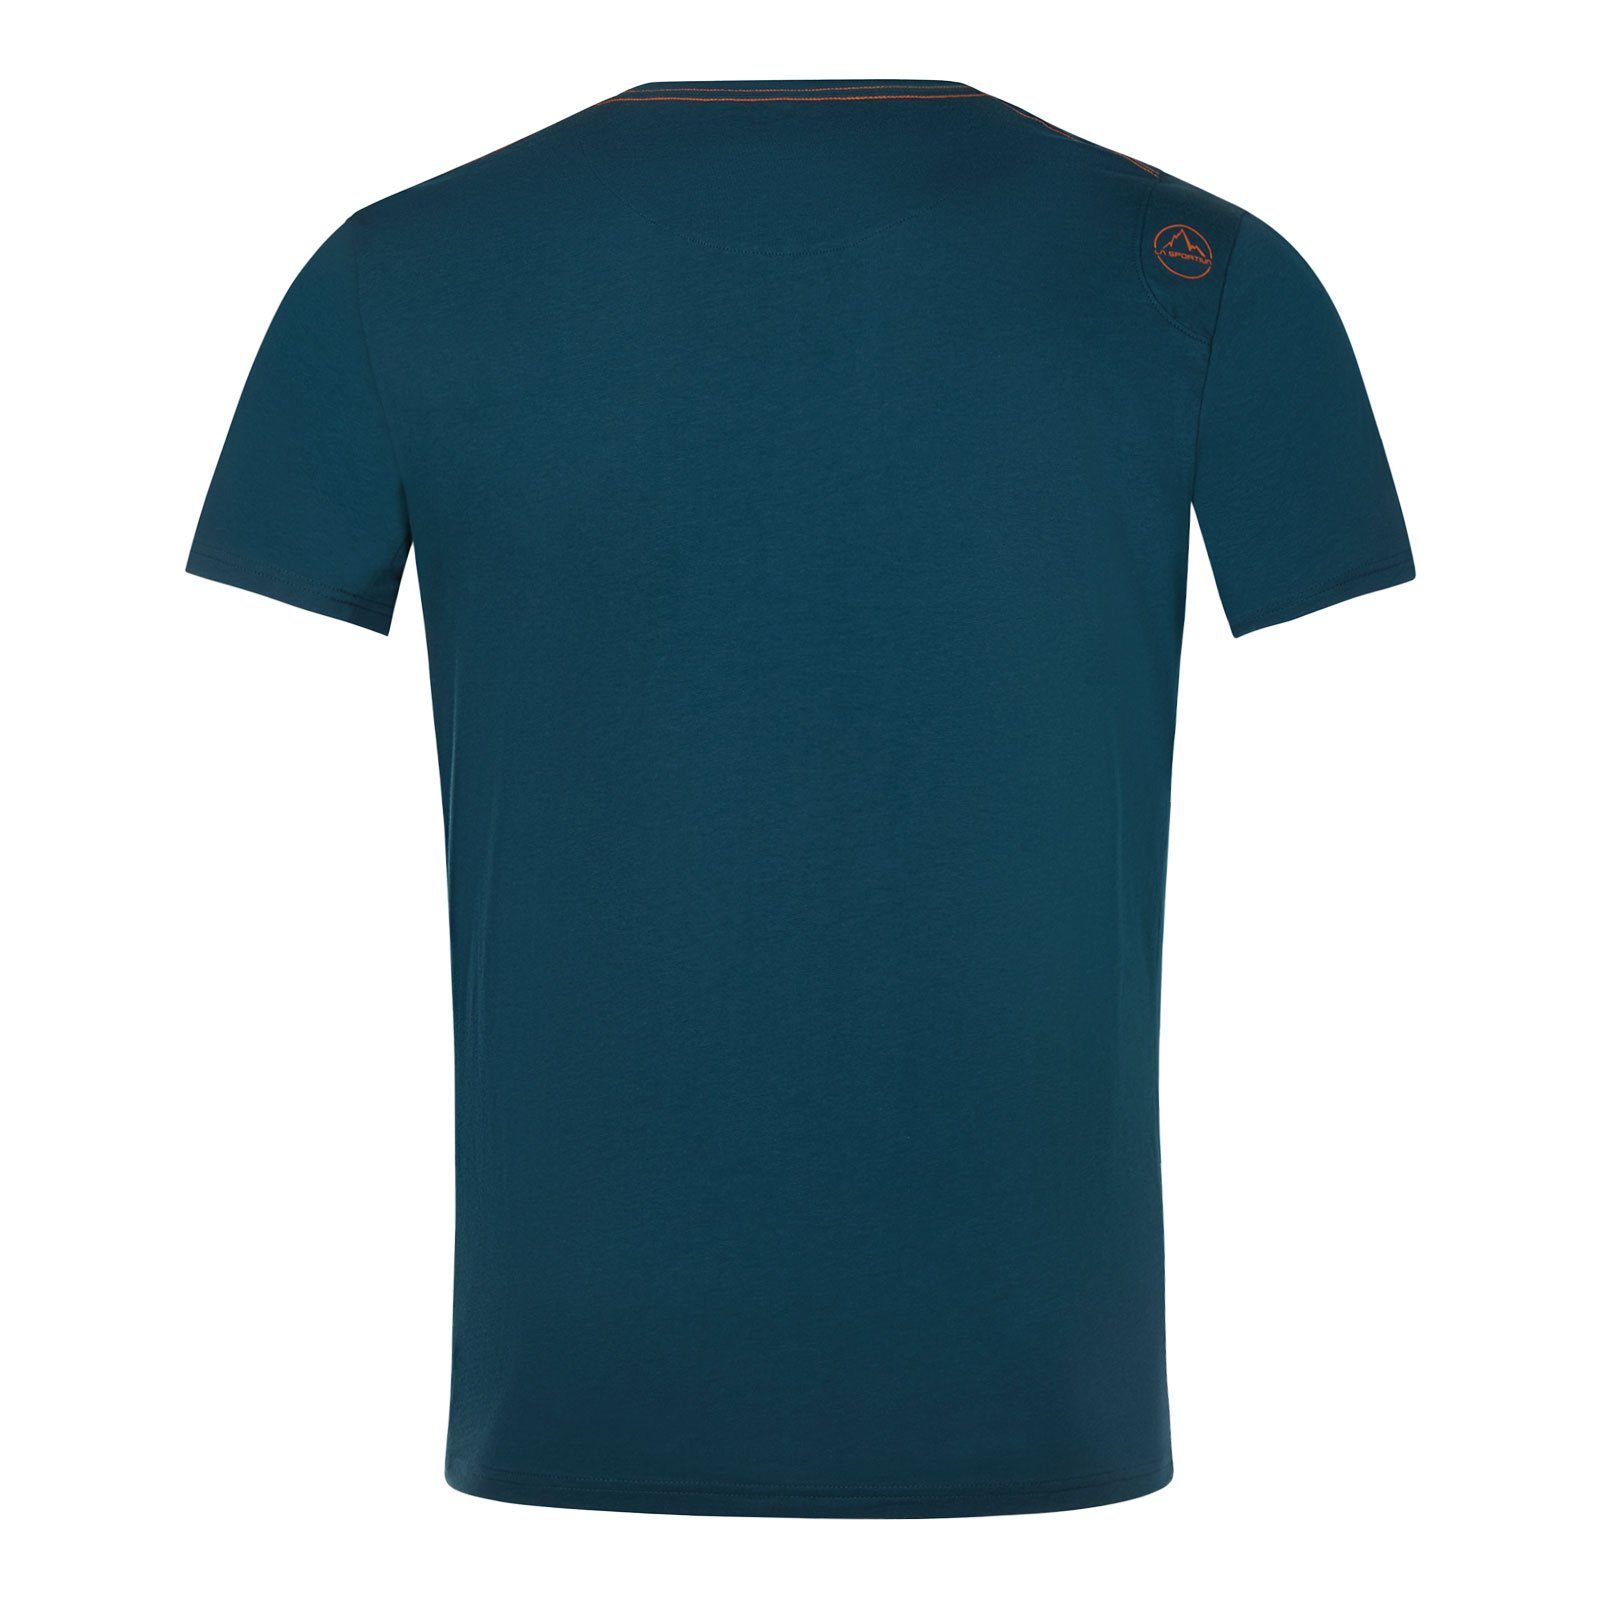 Van aus storm 100% Baumwolle 639639 organischer M Sportiva blue T-Shirt La